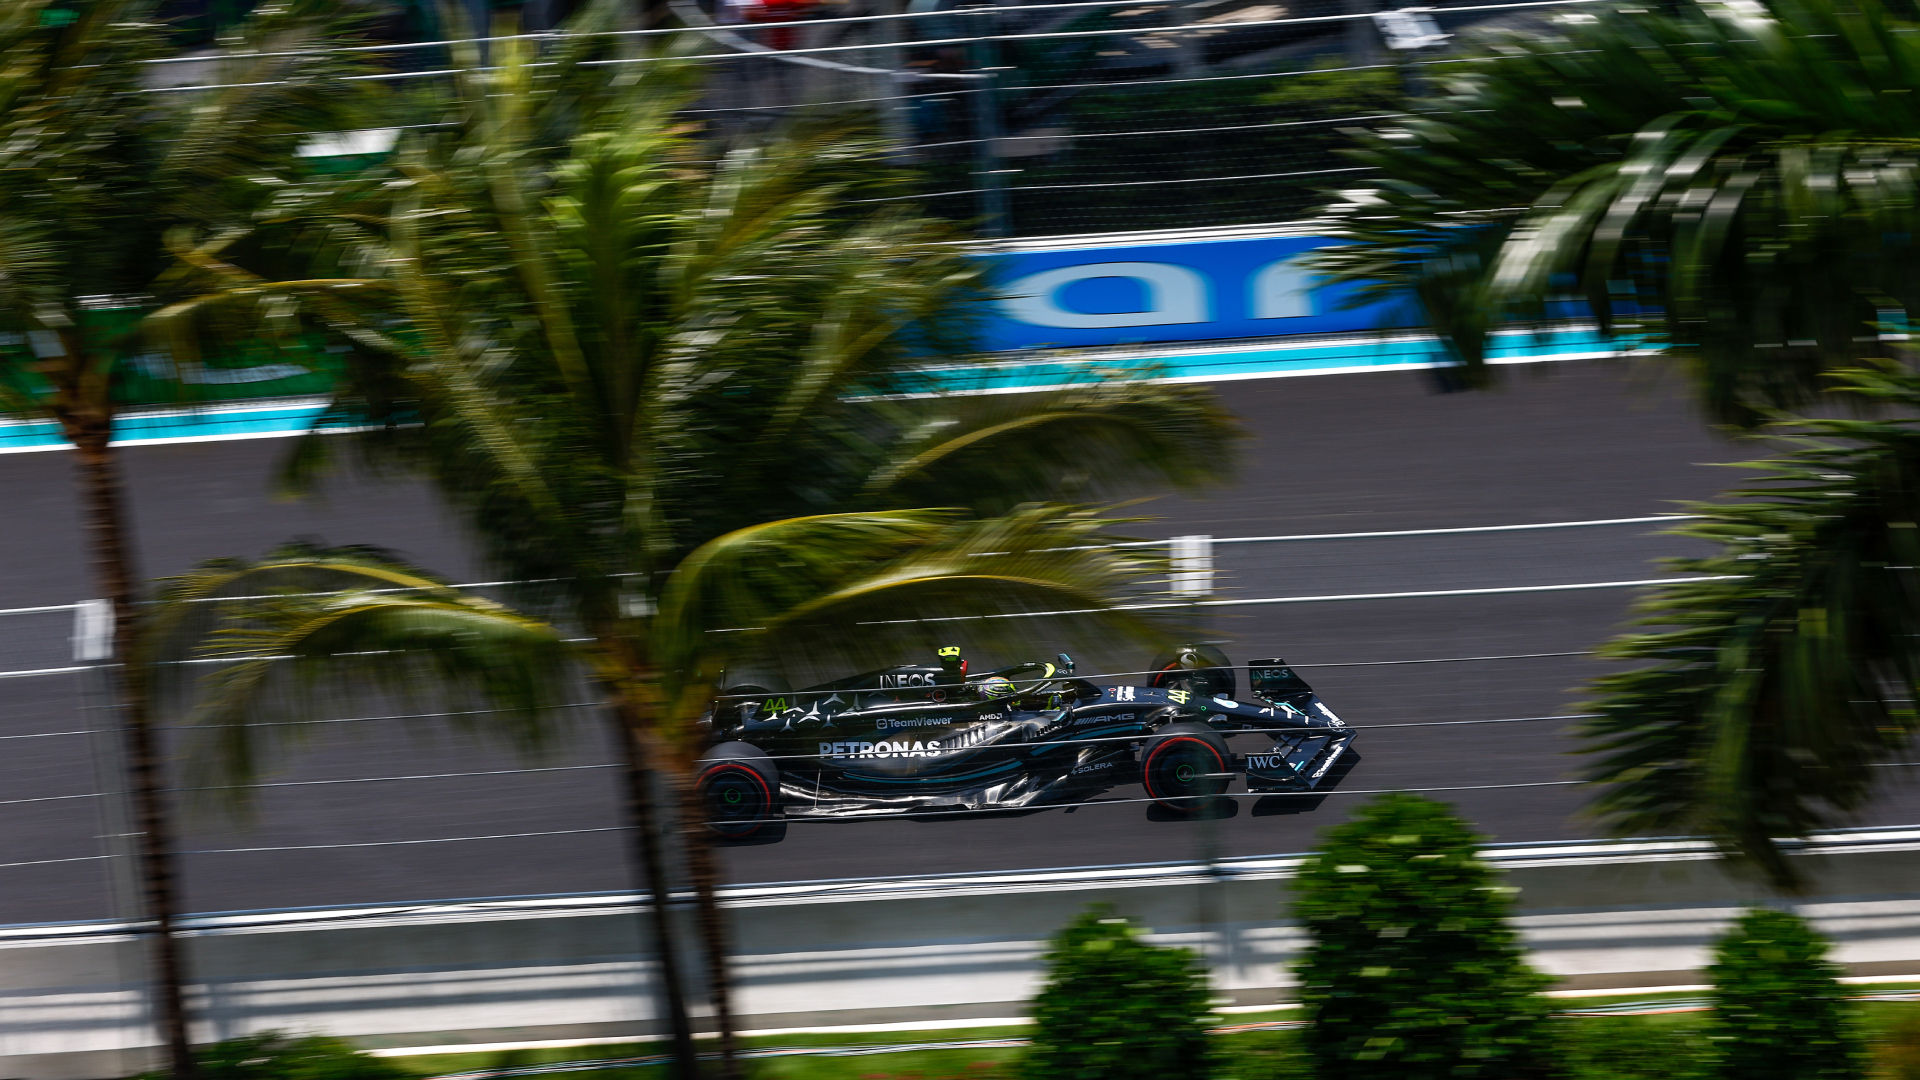 For Lewis Hamilton: Louis Vuitton's Monaco Grand Prix Trophy Trunk